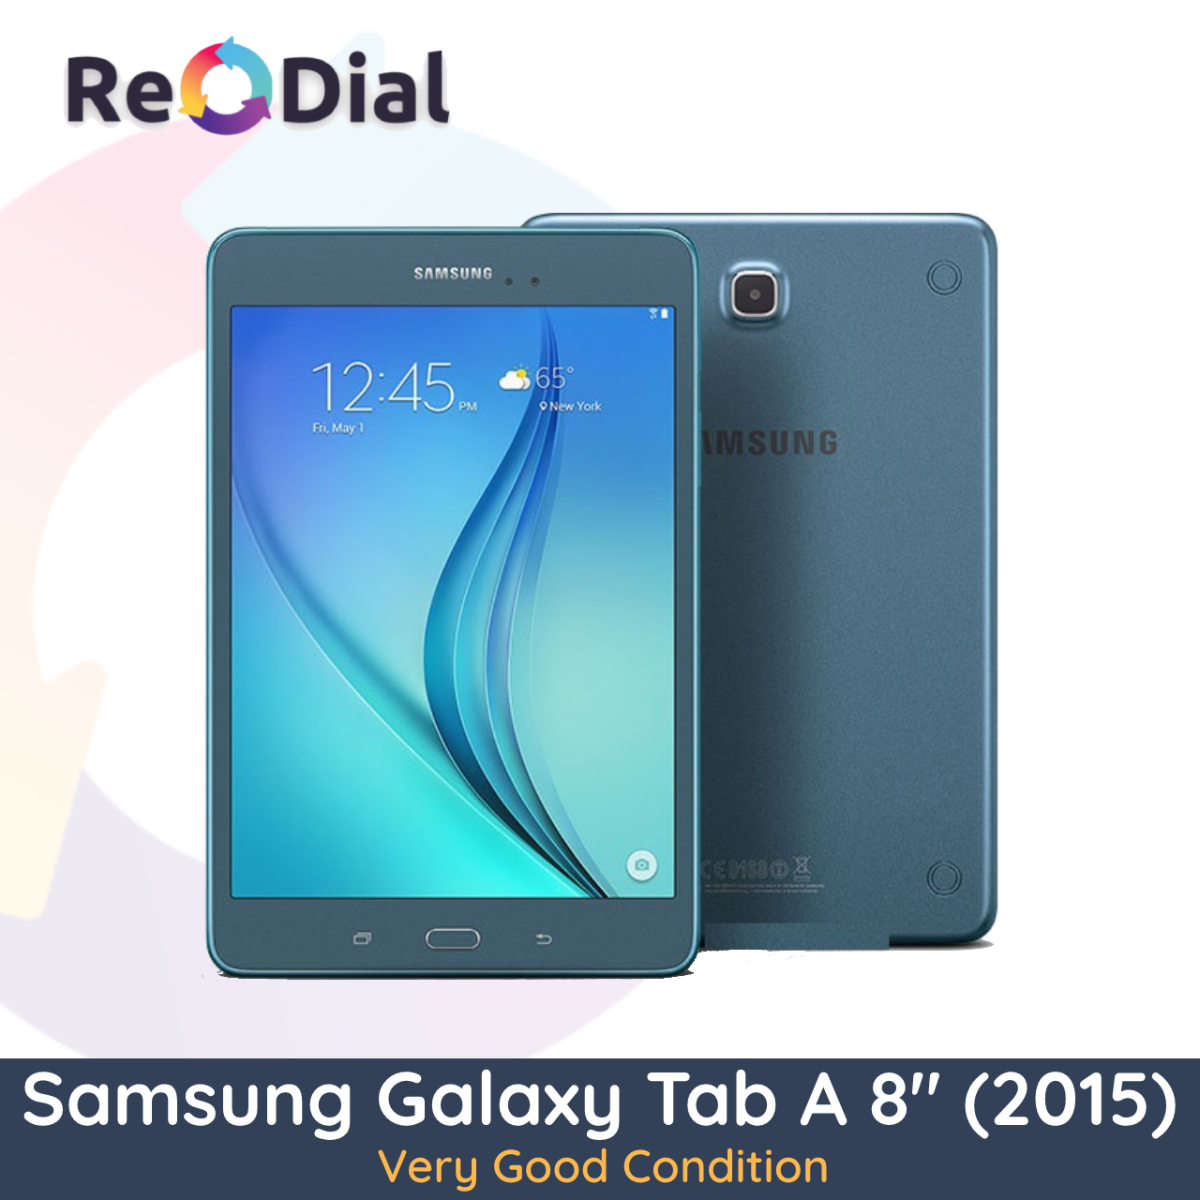 Samsung Galaxy Tab A 8.0" (T355Y / 2015) WiFi + Cellular - Very Good Condition